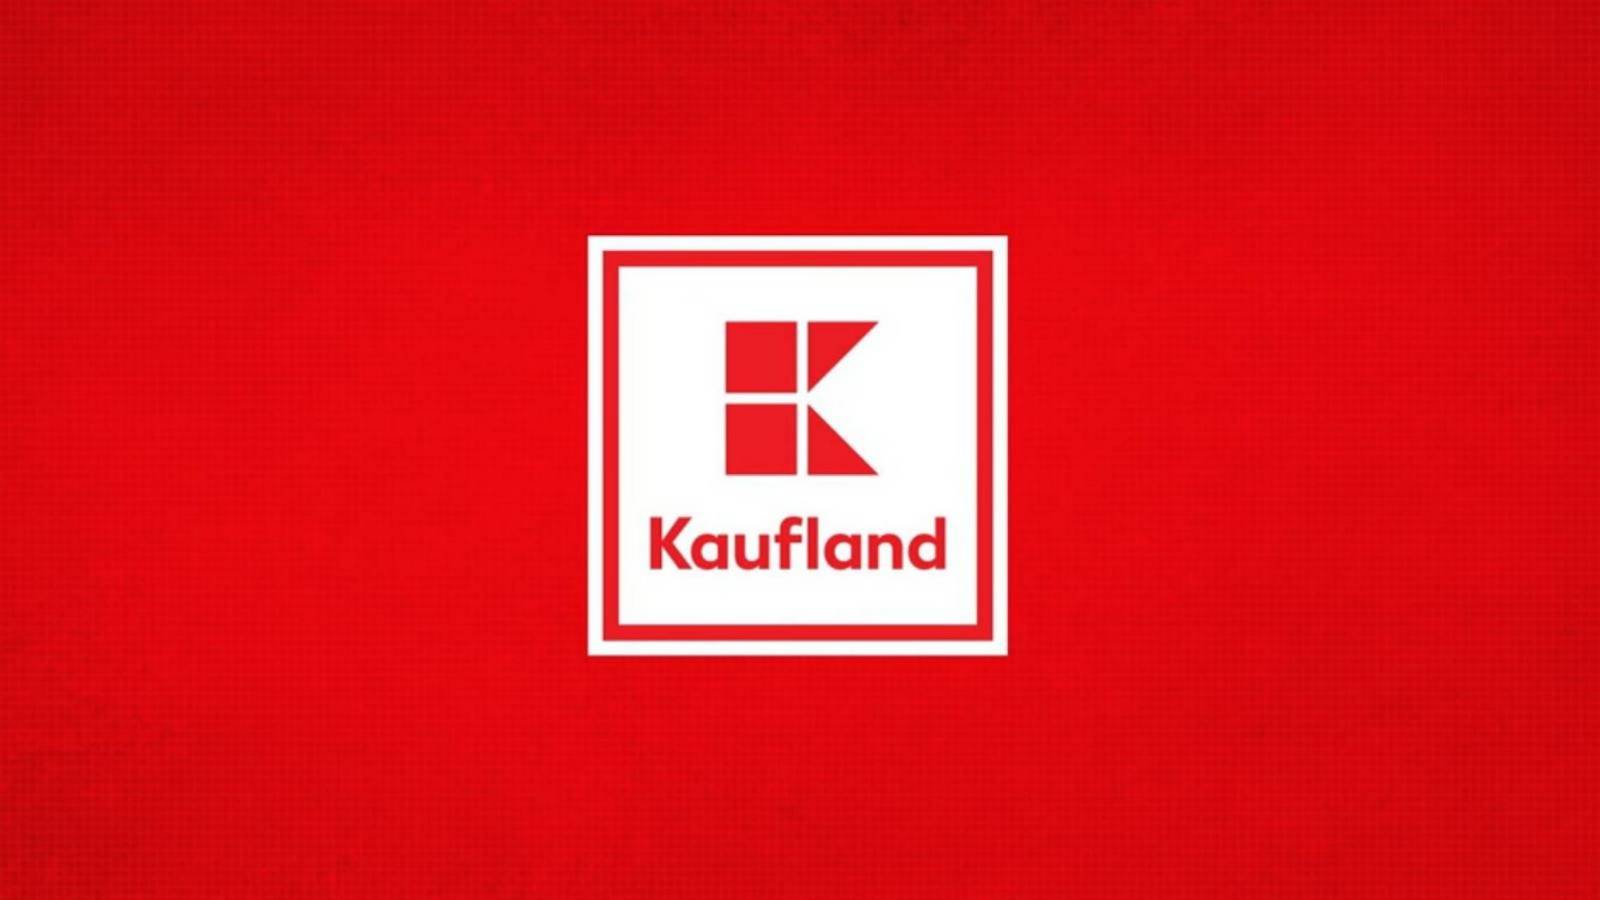 Kaufland ofera gratuit 250 abonamente duble Neversea clientilor